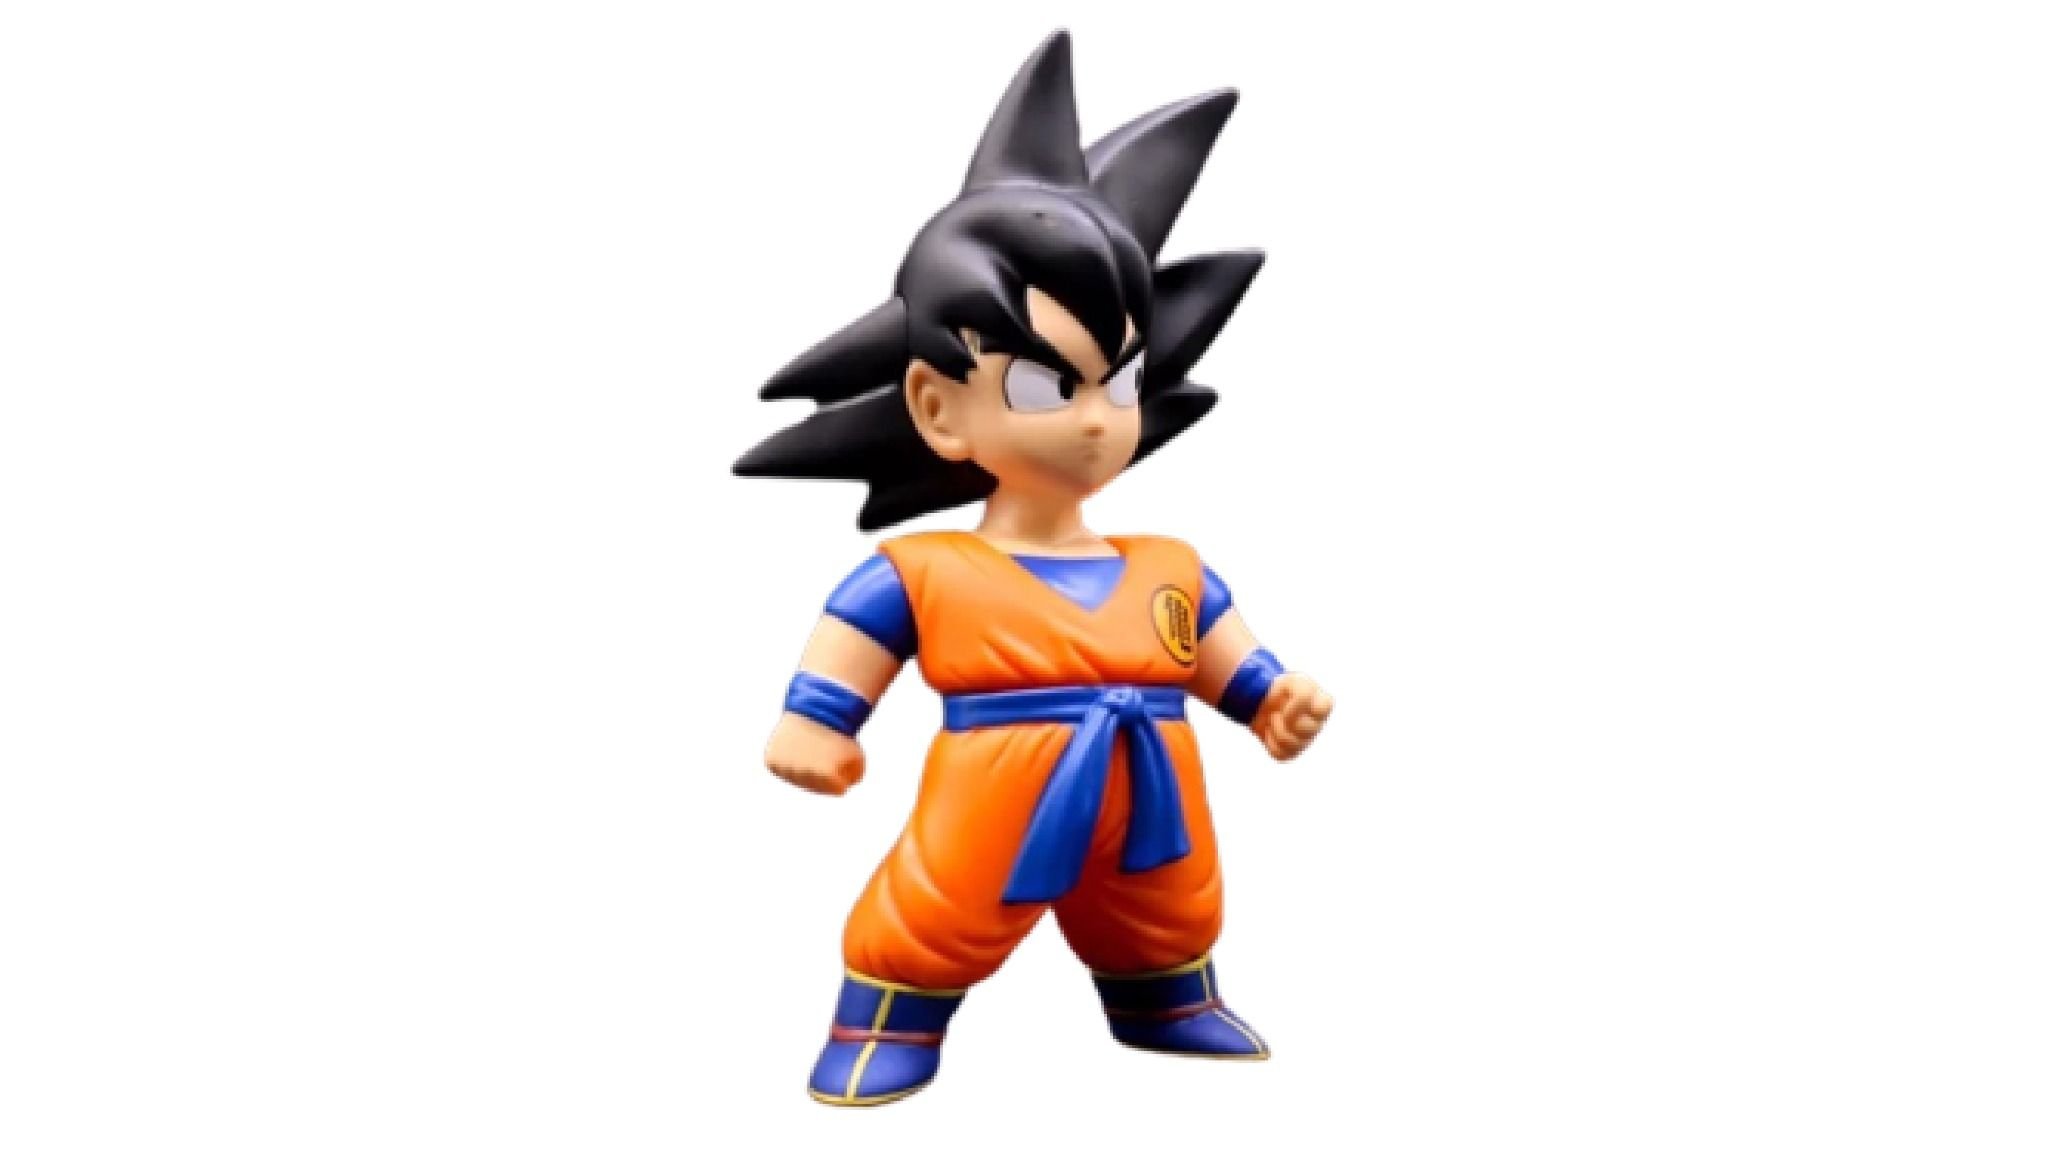 Banpresto Mô hình nhân vật Super Saiyan God Super Saiyan Son Goku dòng Dragon  Ball Super non scale figure 20cm DBBP01  GameStopvn